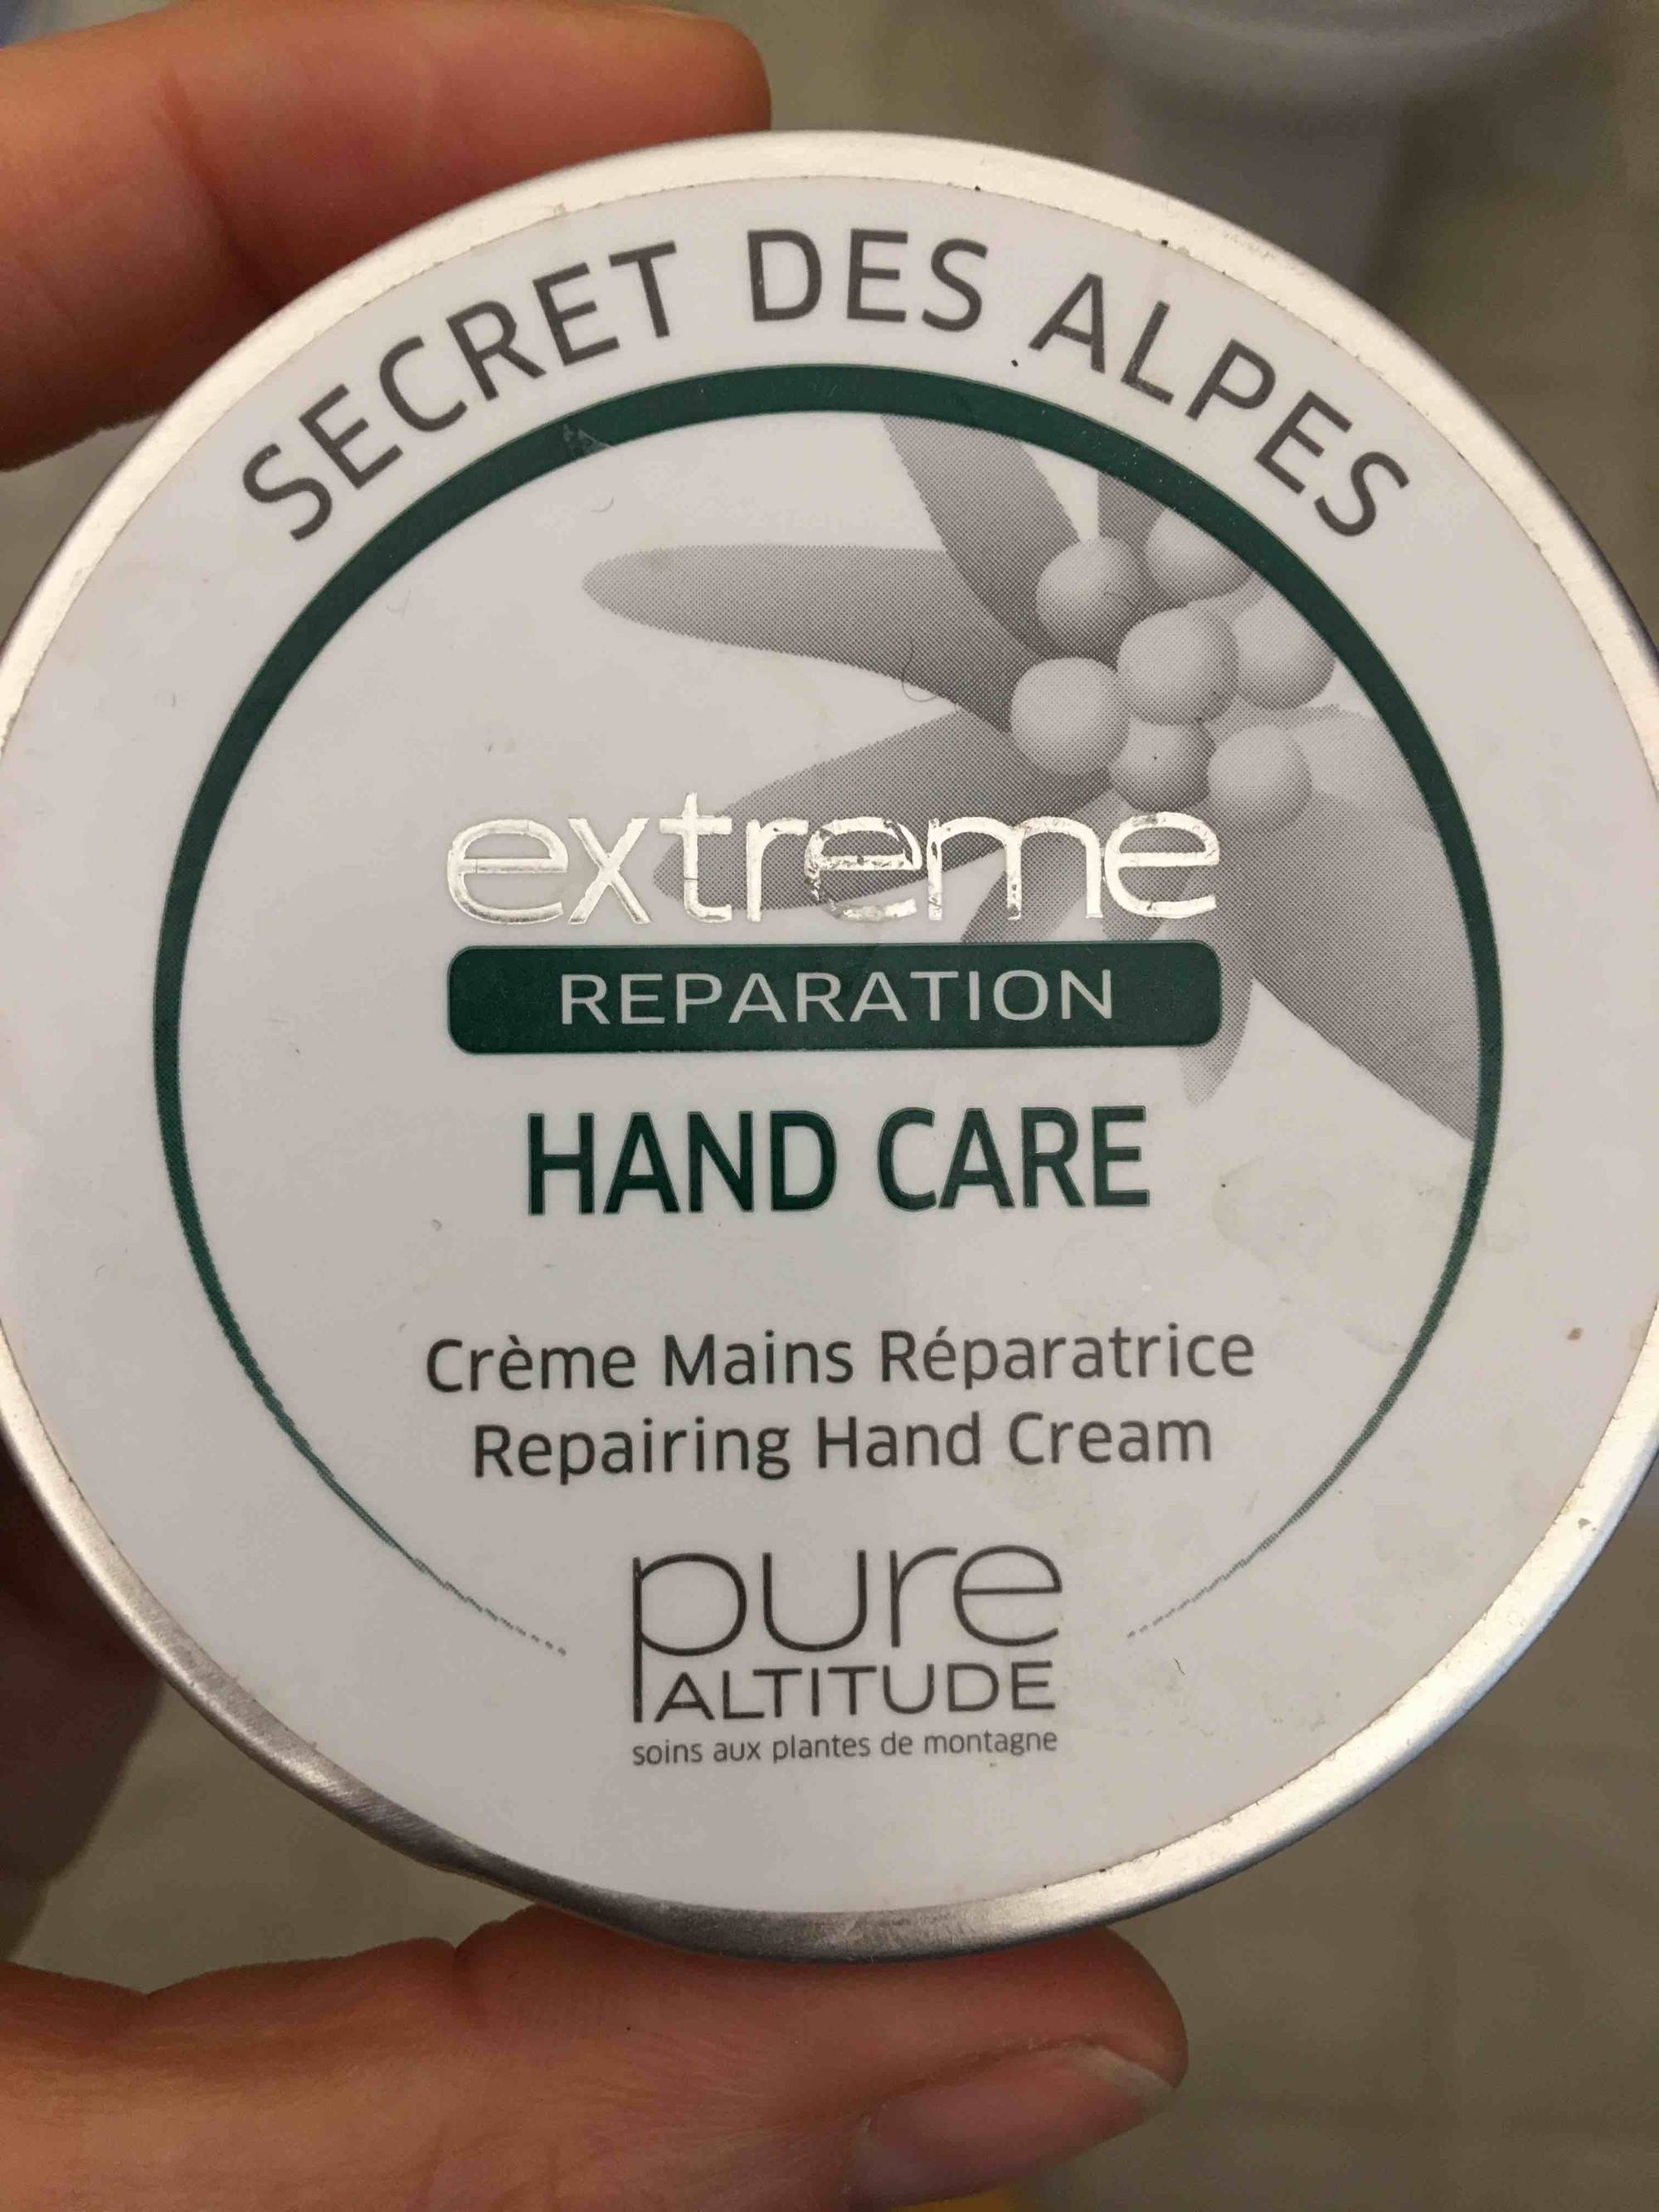 PURE ALTITUDE - Secret des Alpes - Crèmes mains réparatrice